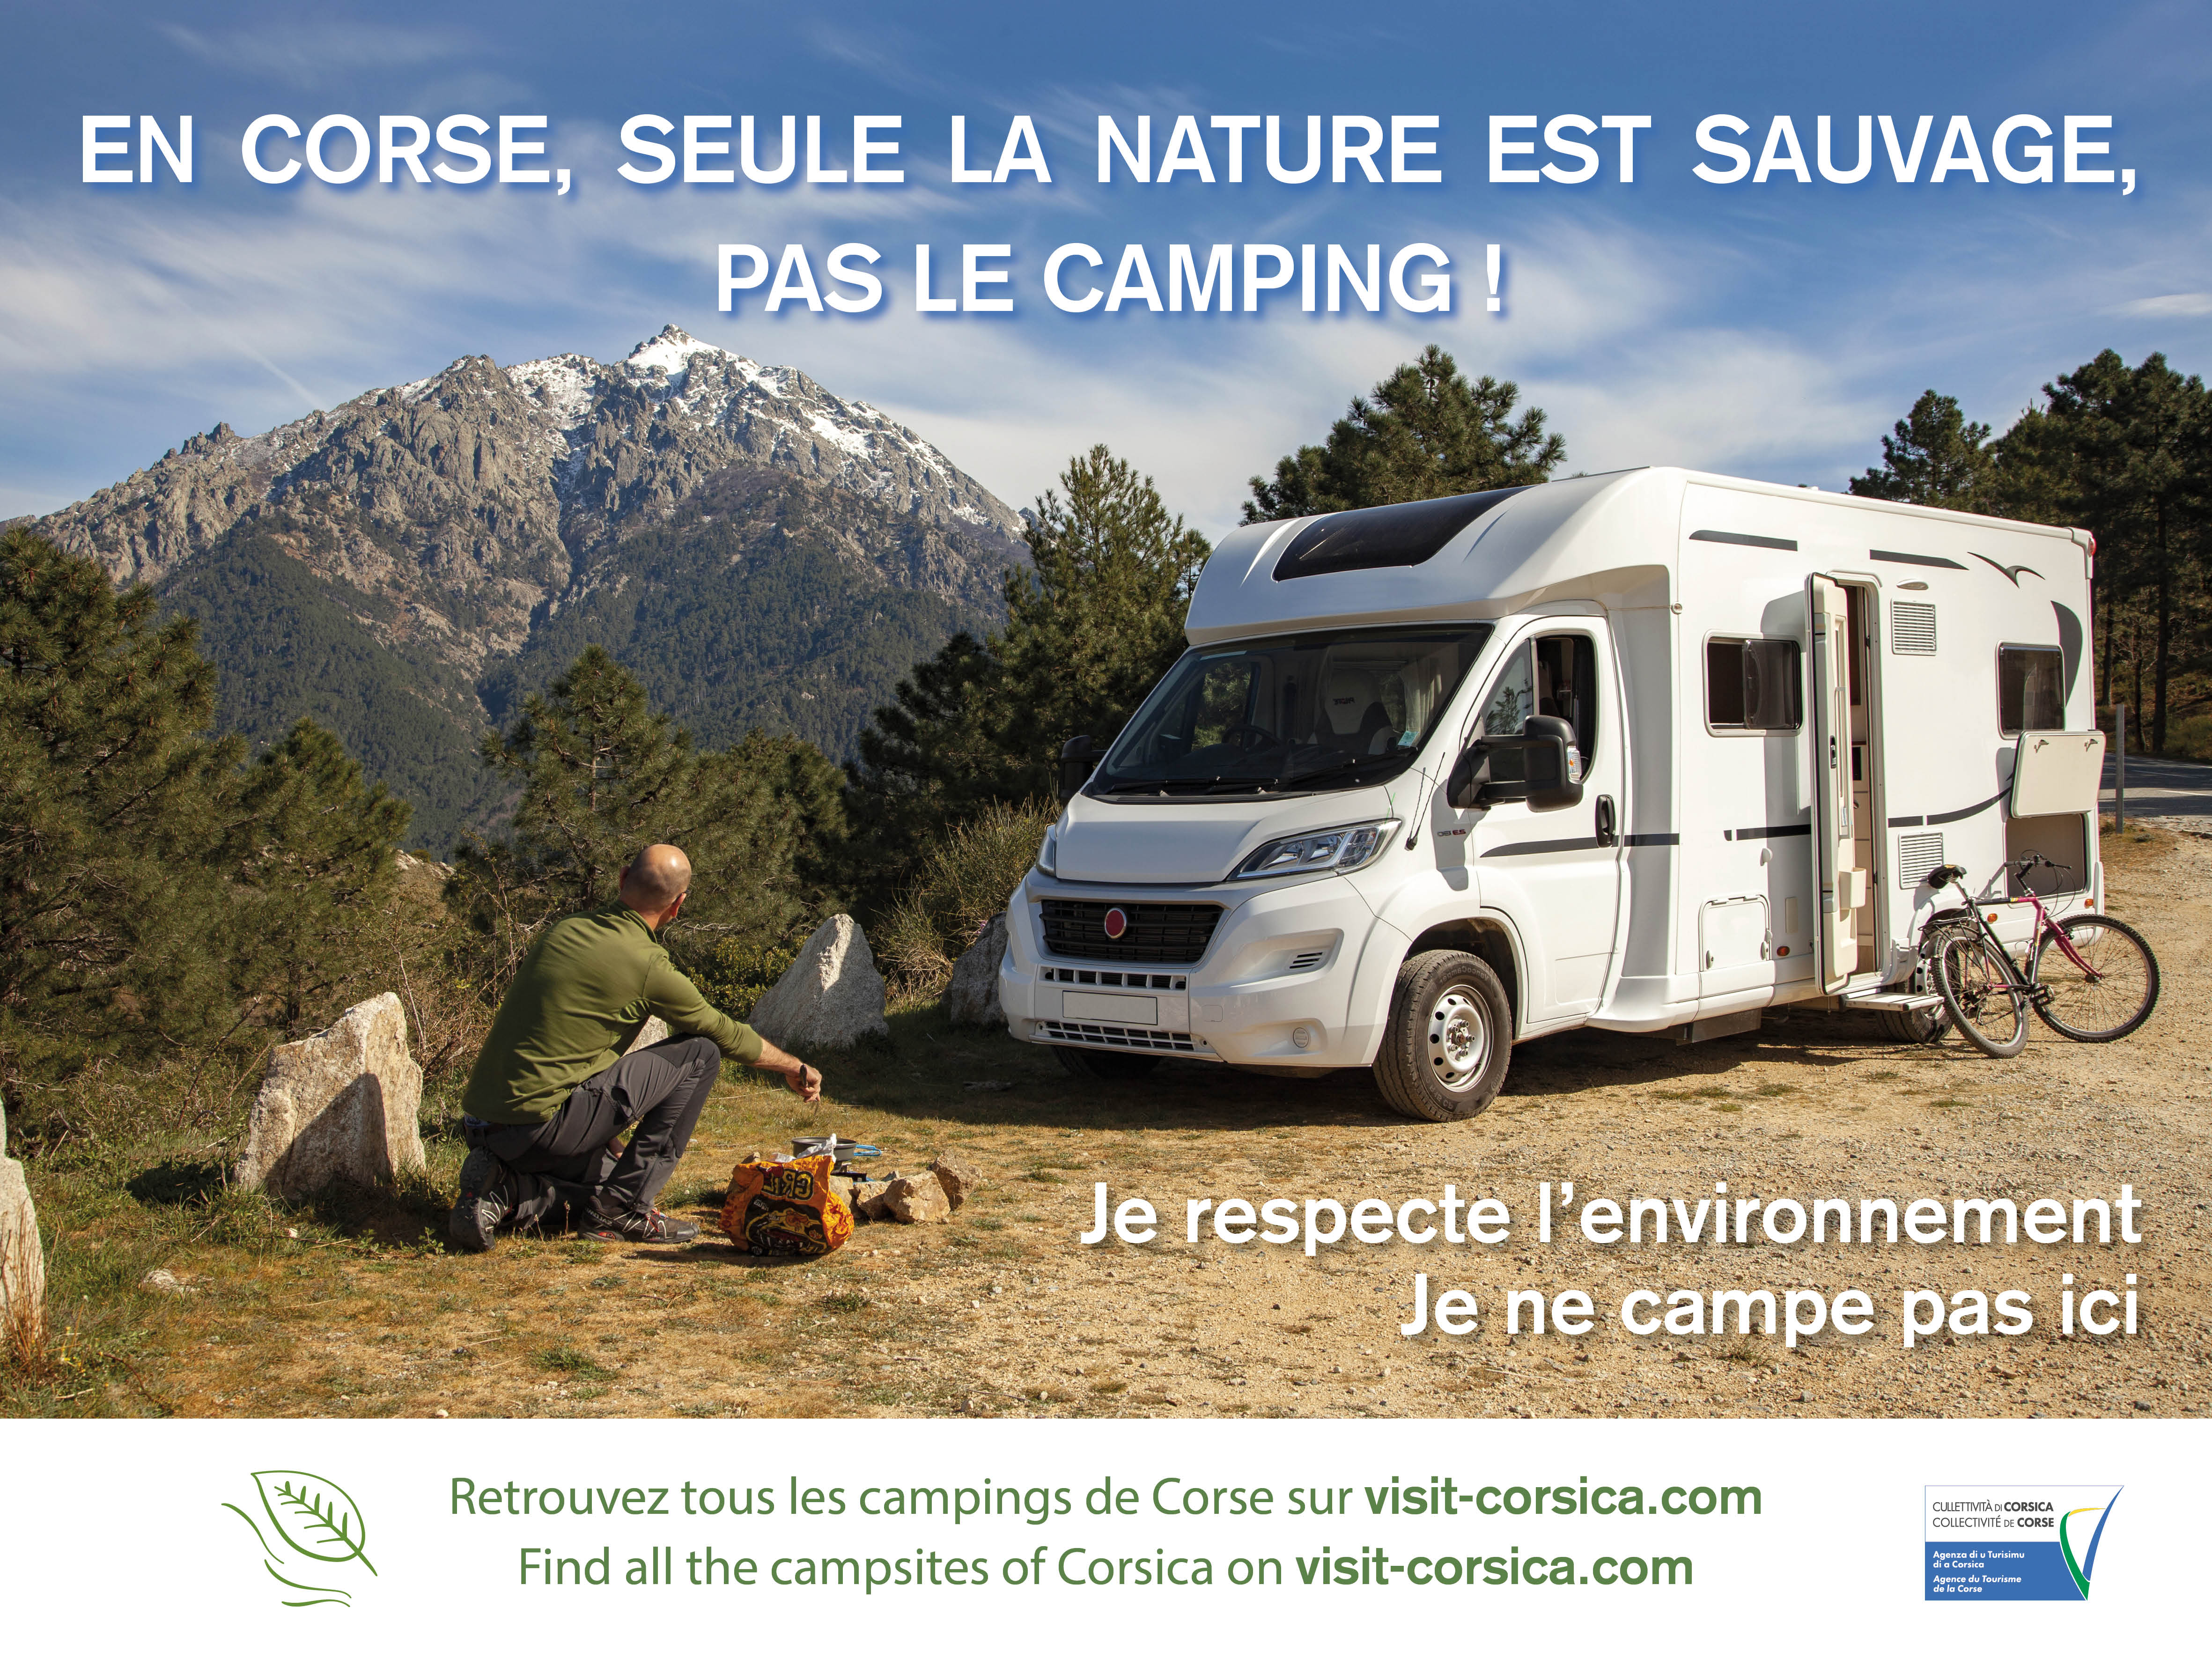 En Corse, seule la nature est sauvage… Pas le camping !